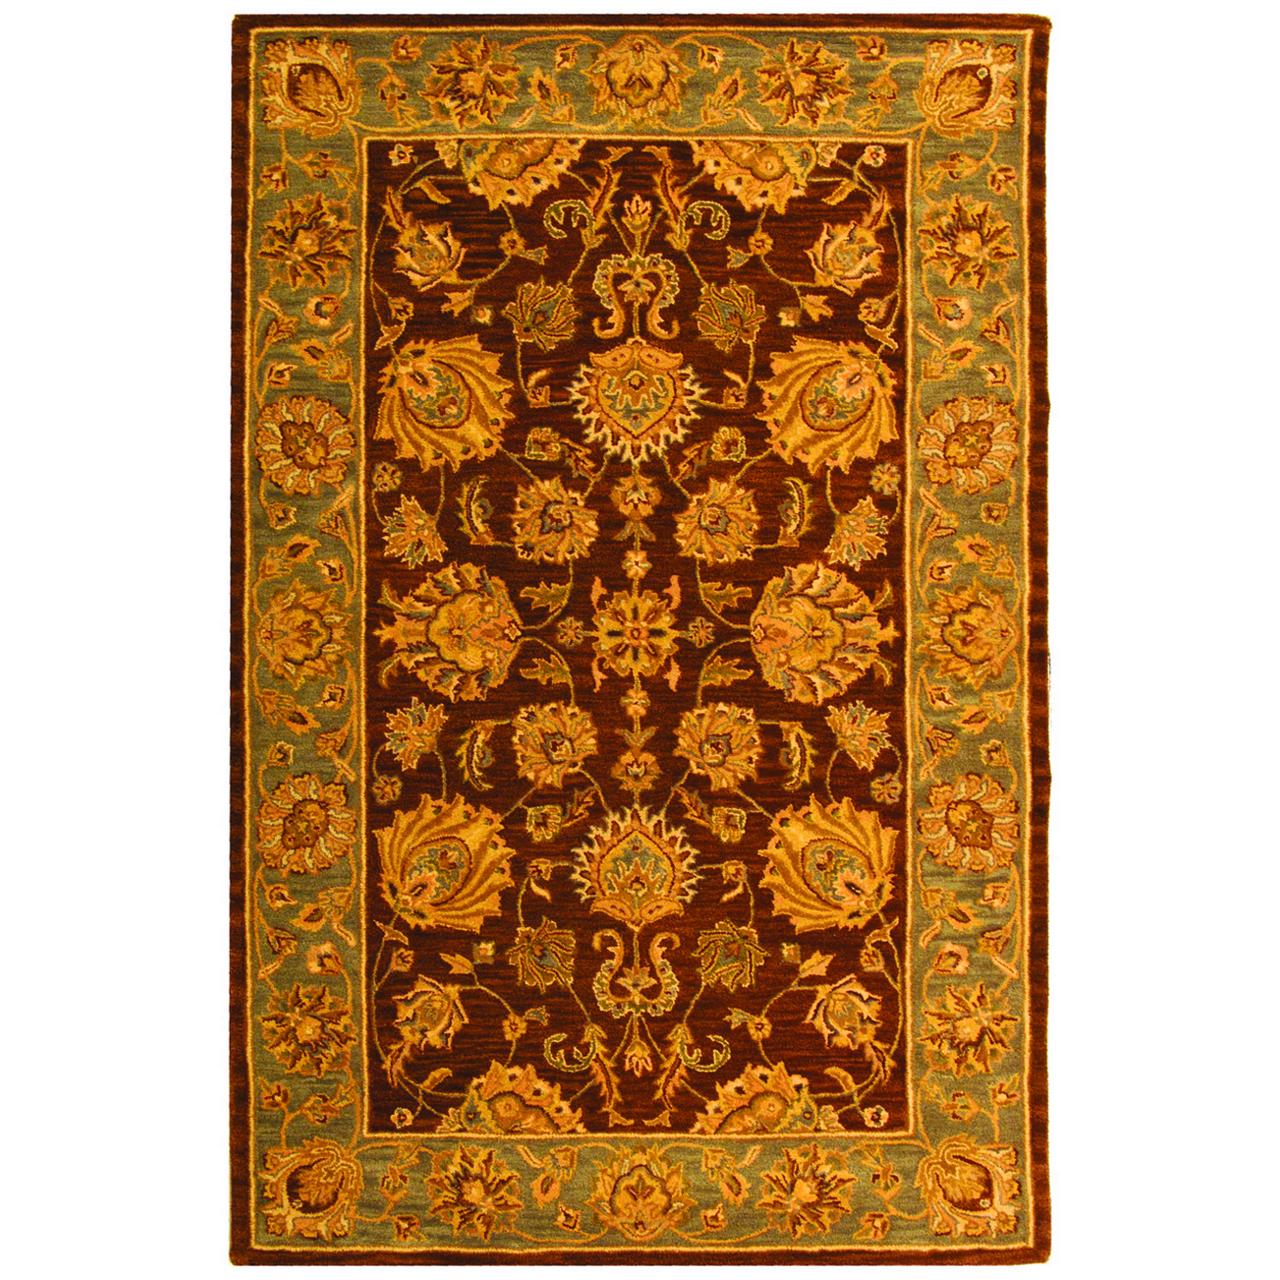 SAFAVIEH Heritage Regis Traditional Wool Area Rug, Brown/Blue, 4' x 6' - image 1 of 9